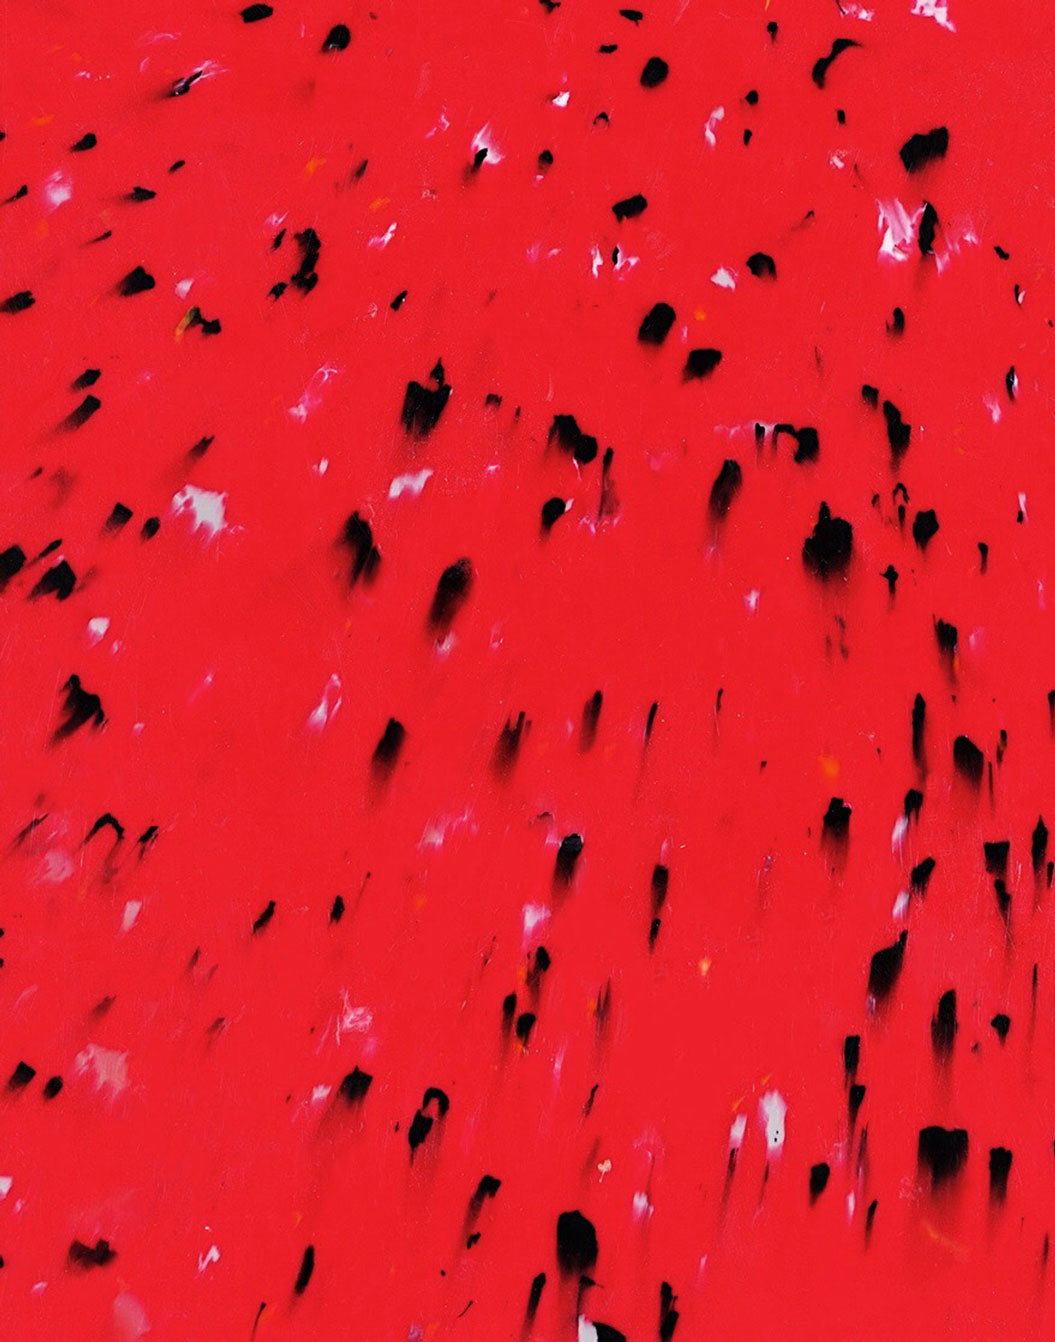 Les granités, couleur rouge avec des copeaux noirs en grande partie et quelques blancs